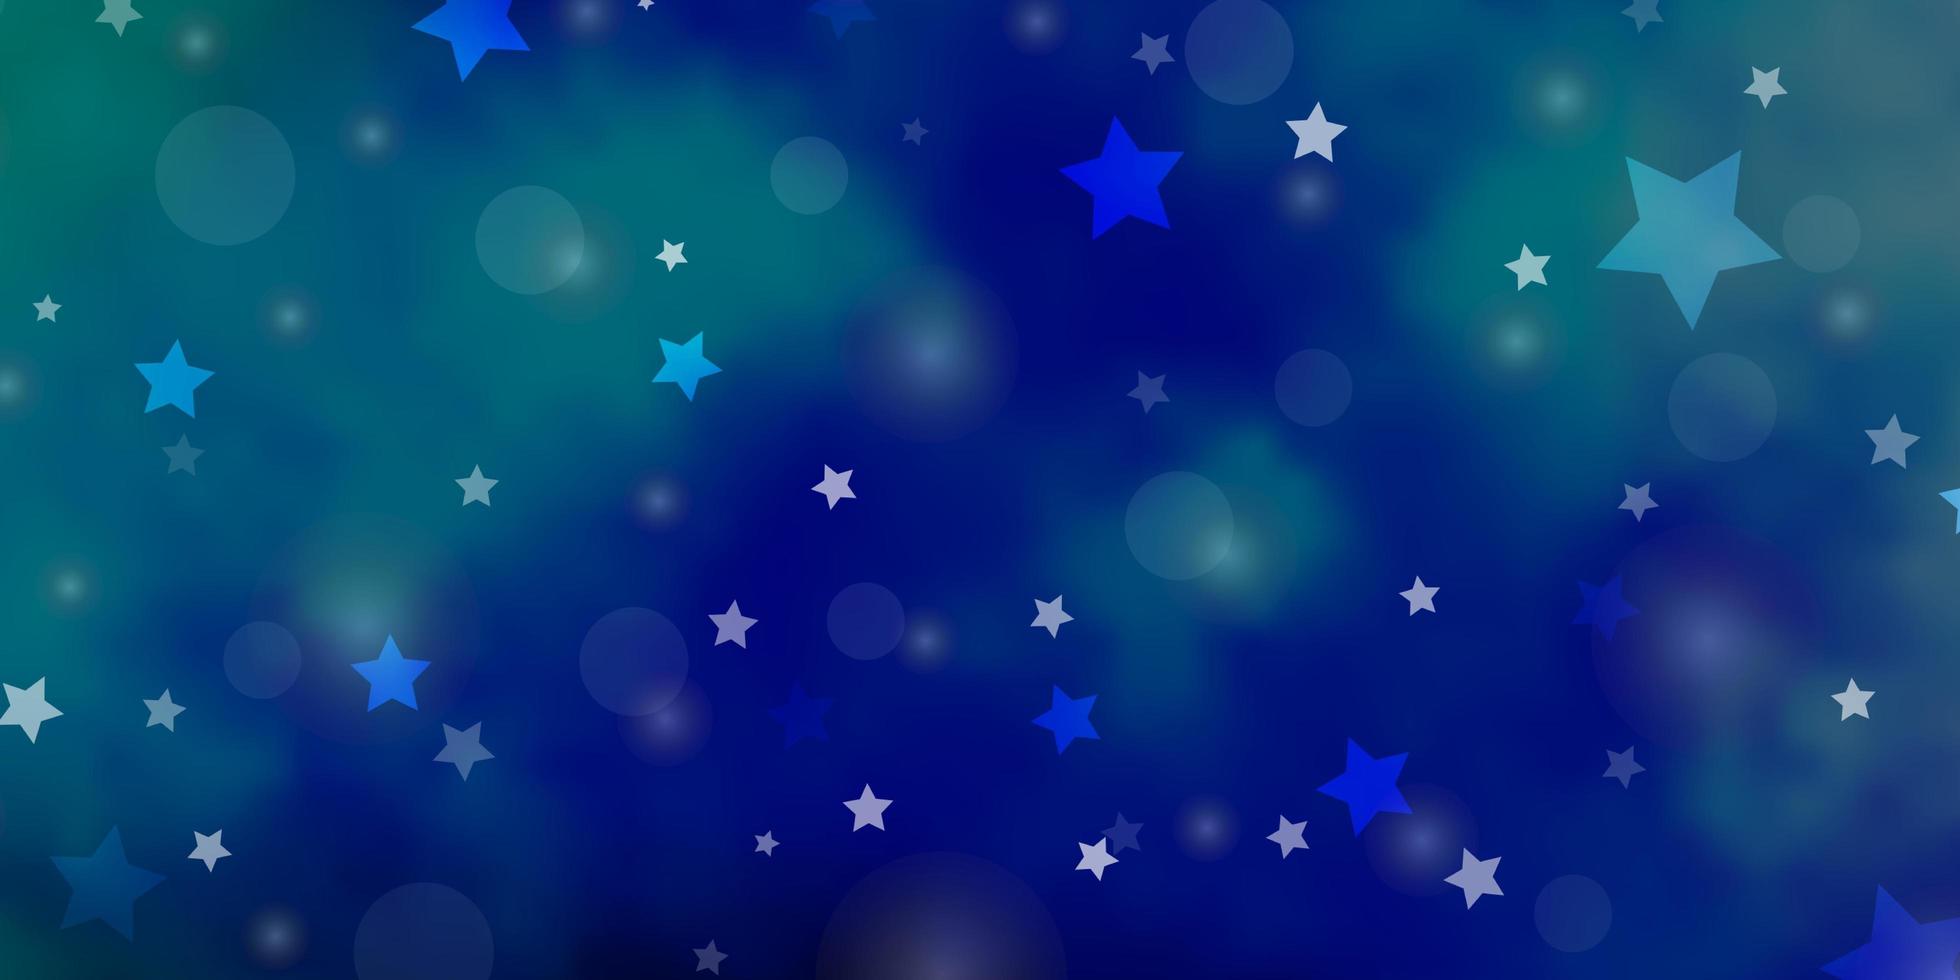 textura vector azul, verde claro com círculos, estrelas. ilustração com conjunto de esferas abstratas coloridas, estrelas. padrão para tecidos da moda, papéis de parede.